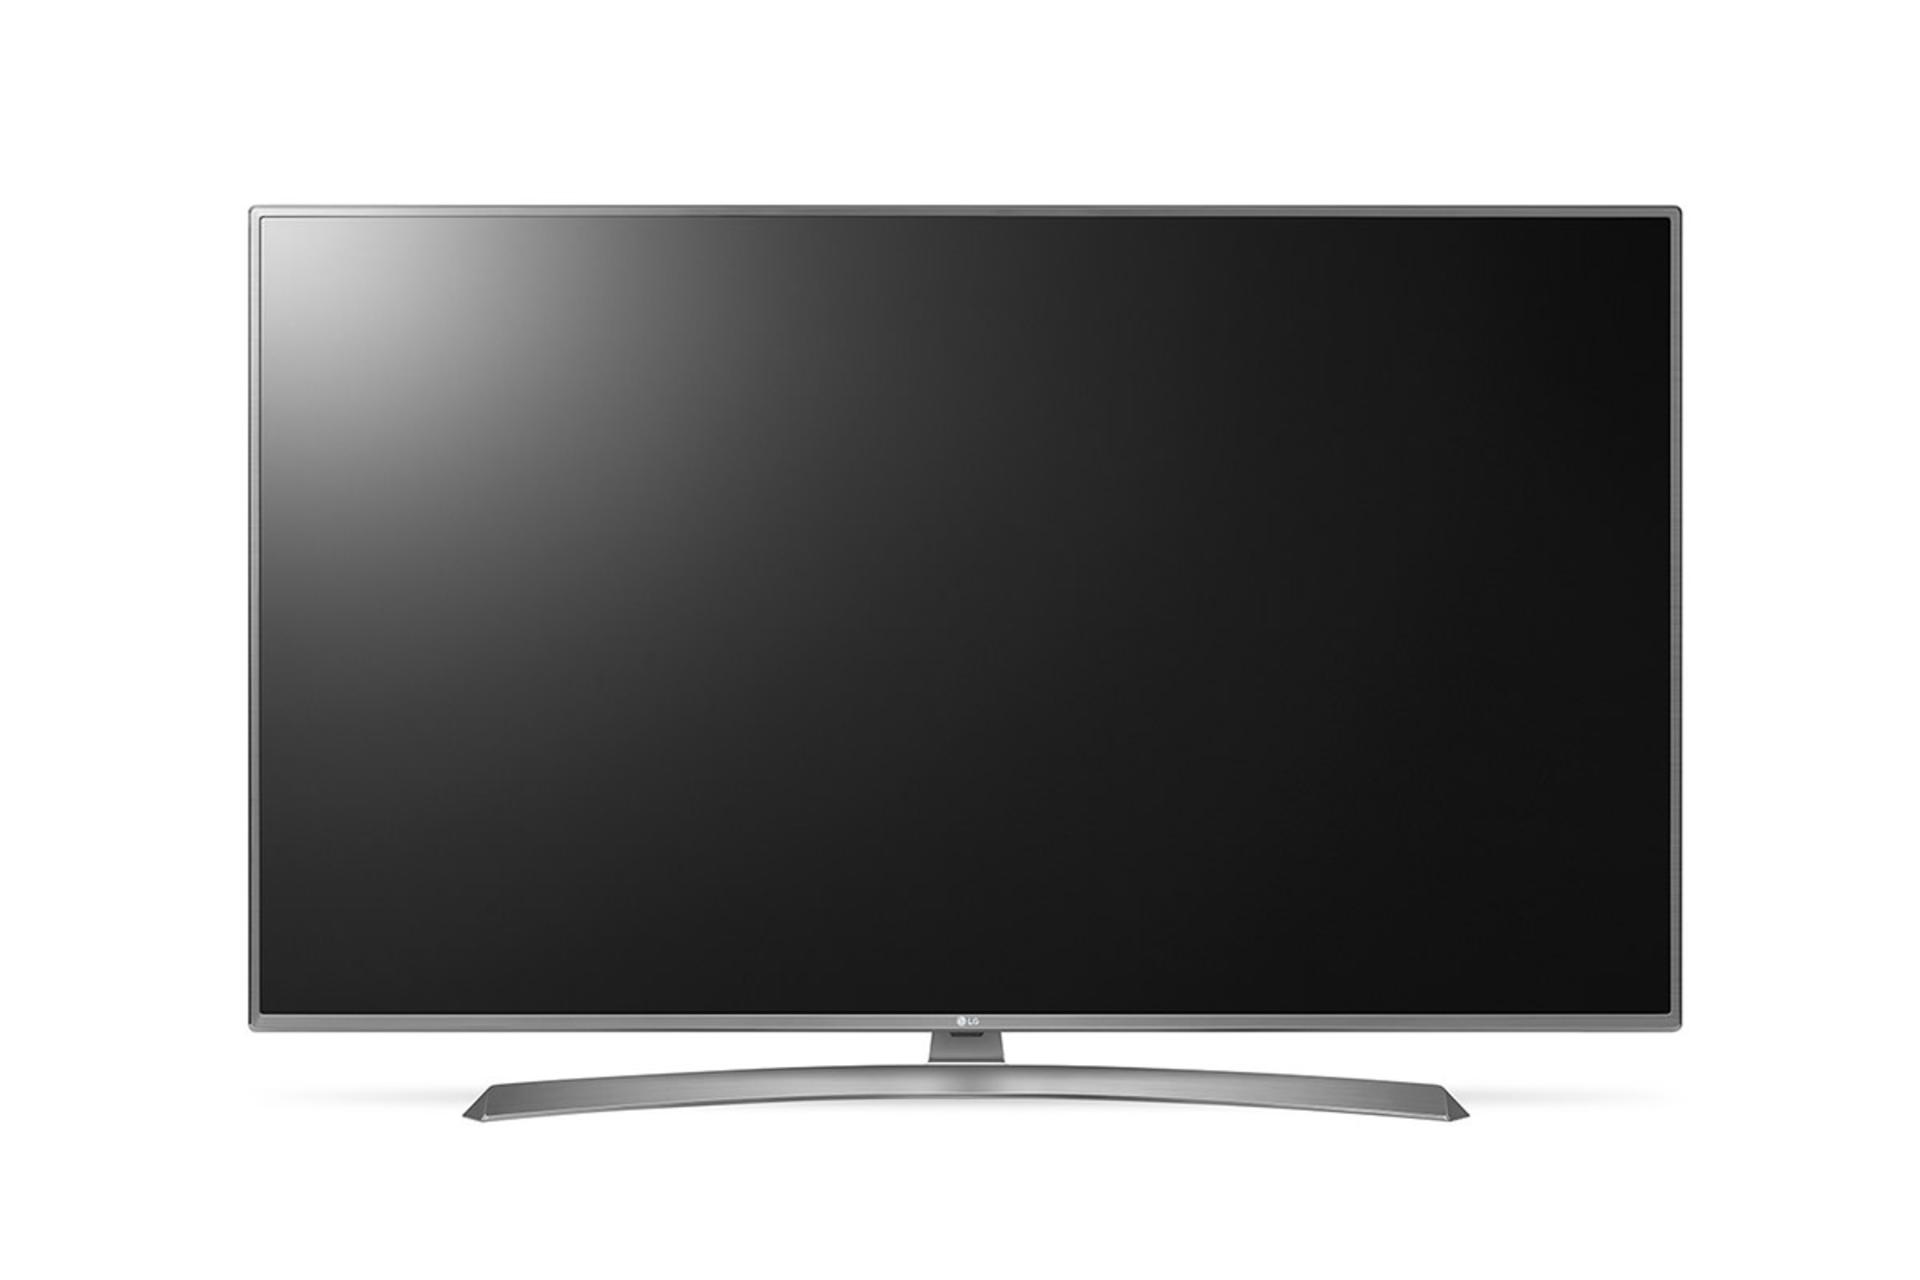 نمای جلو تلویزیون ال جی UJ6900 مدل 49 اینچ با بدنه نقره ای و صفحه خاموش